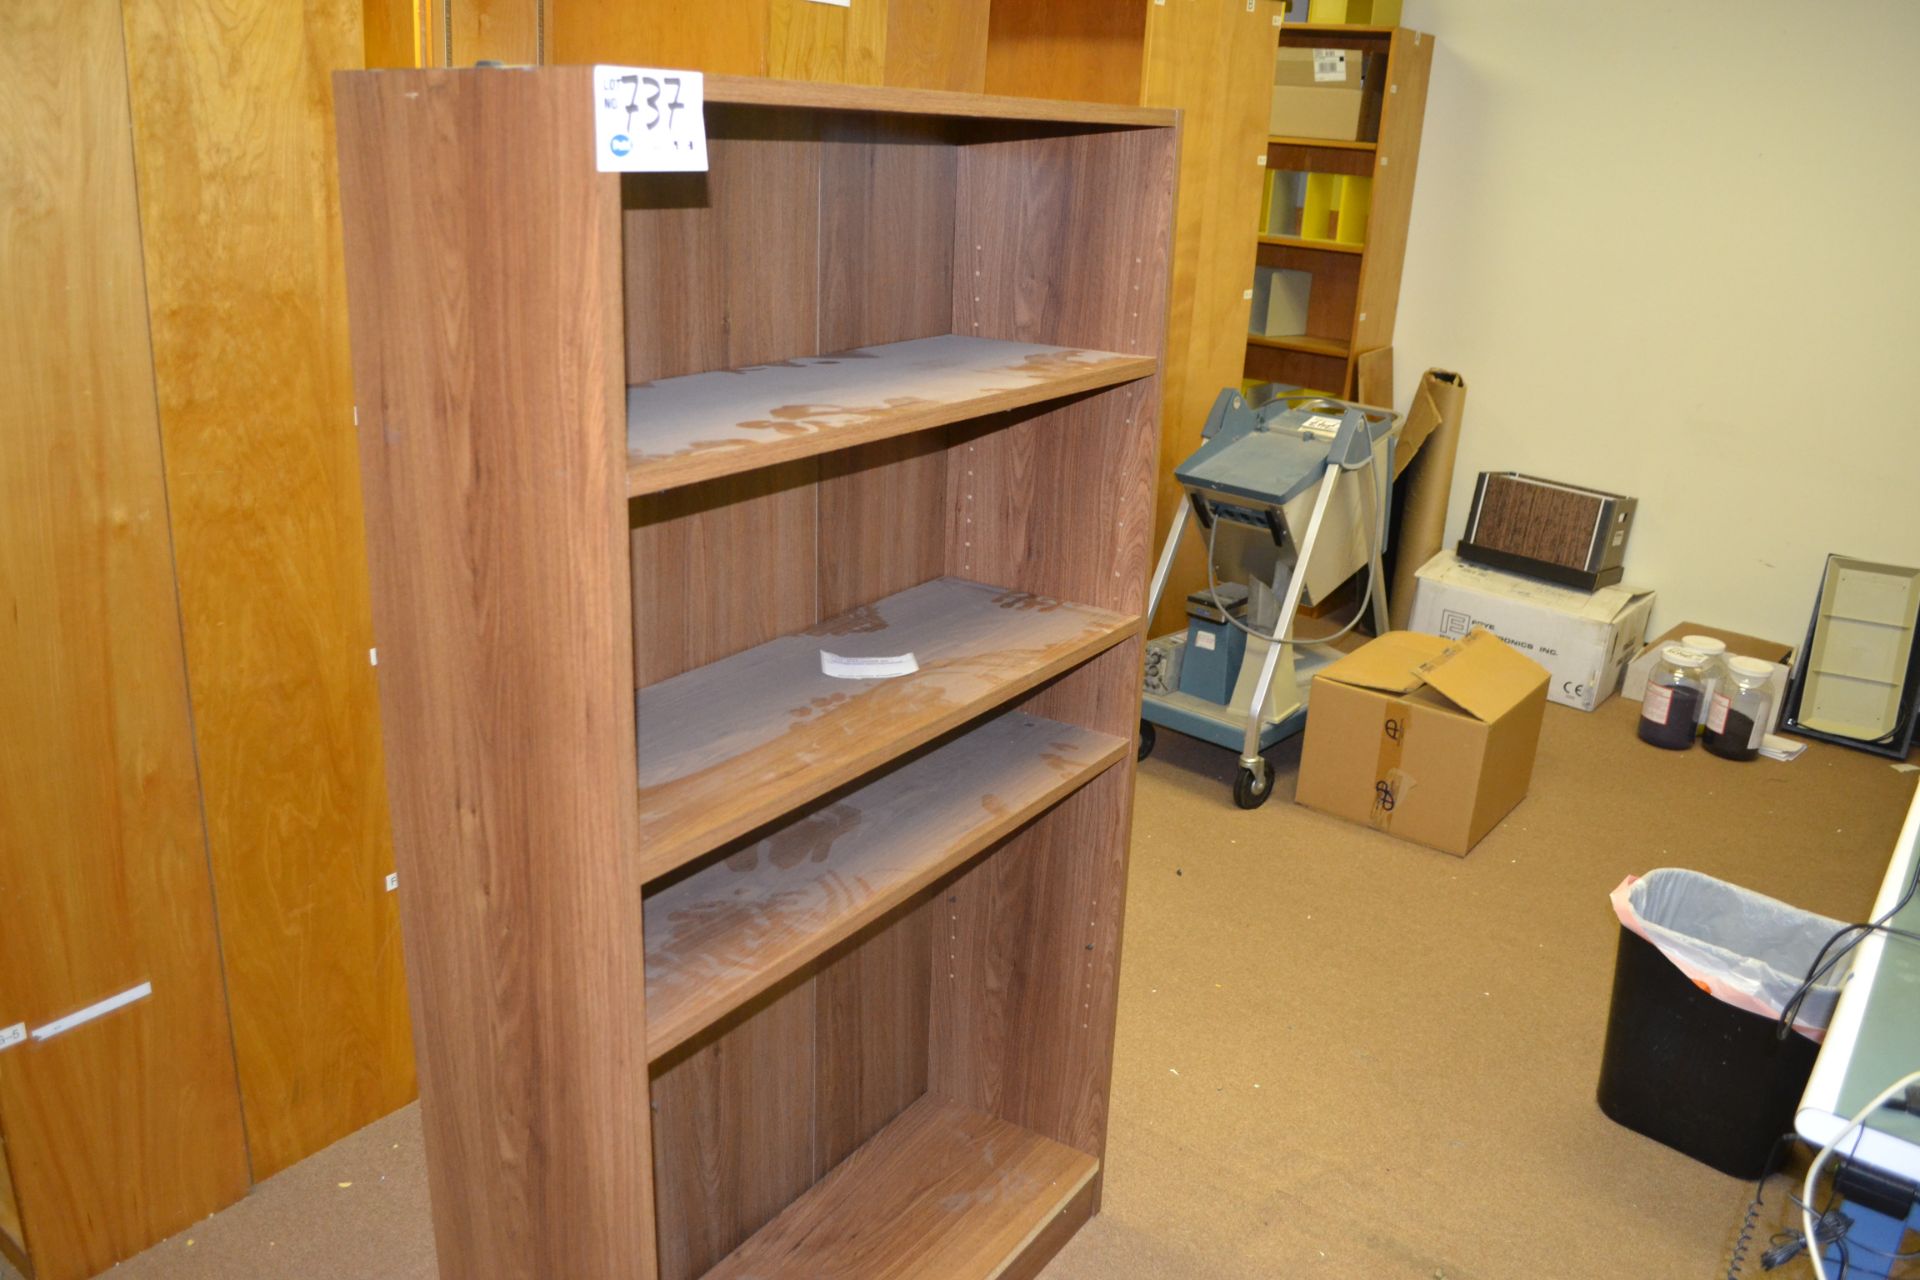 3' X 1' X 5' Tall Wood Book Shelf